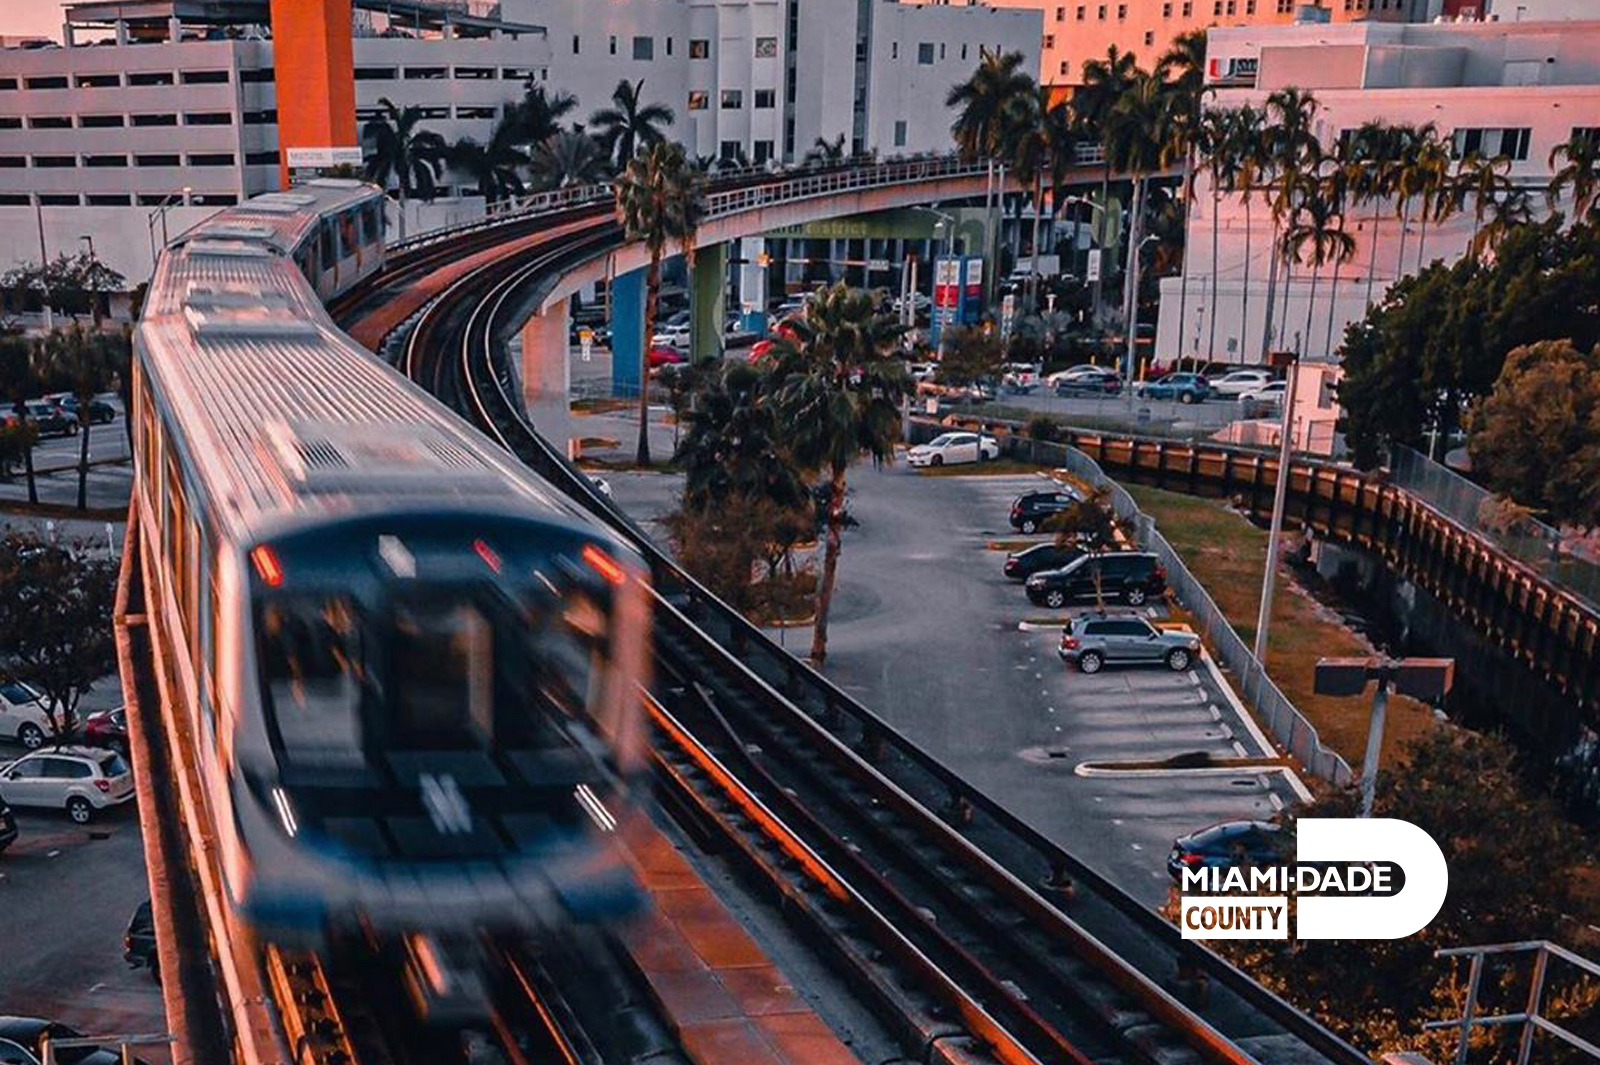 Miami-Dade still of public transport tram.